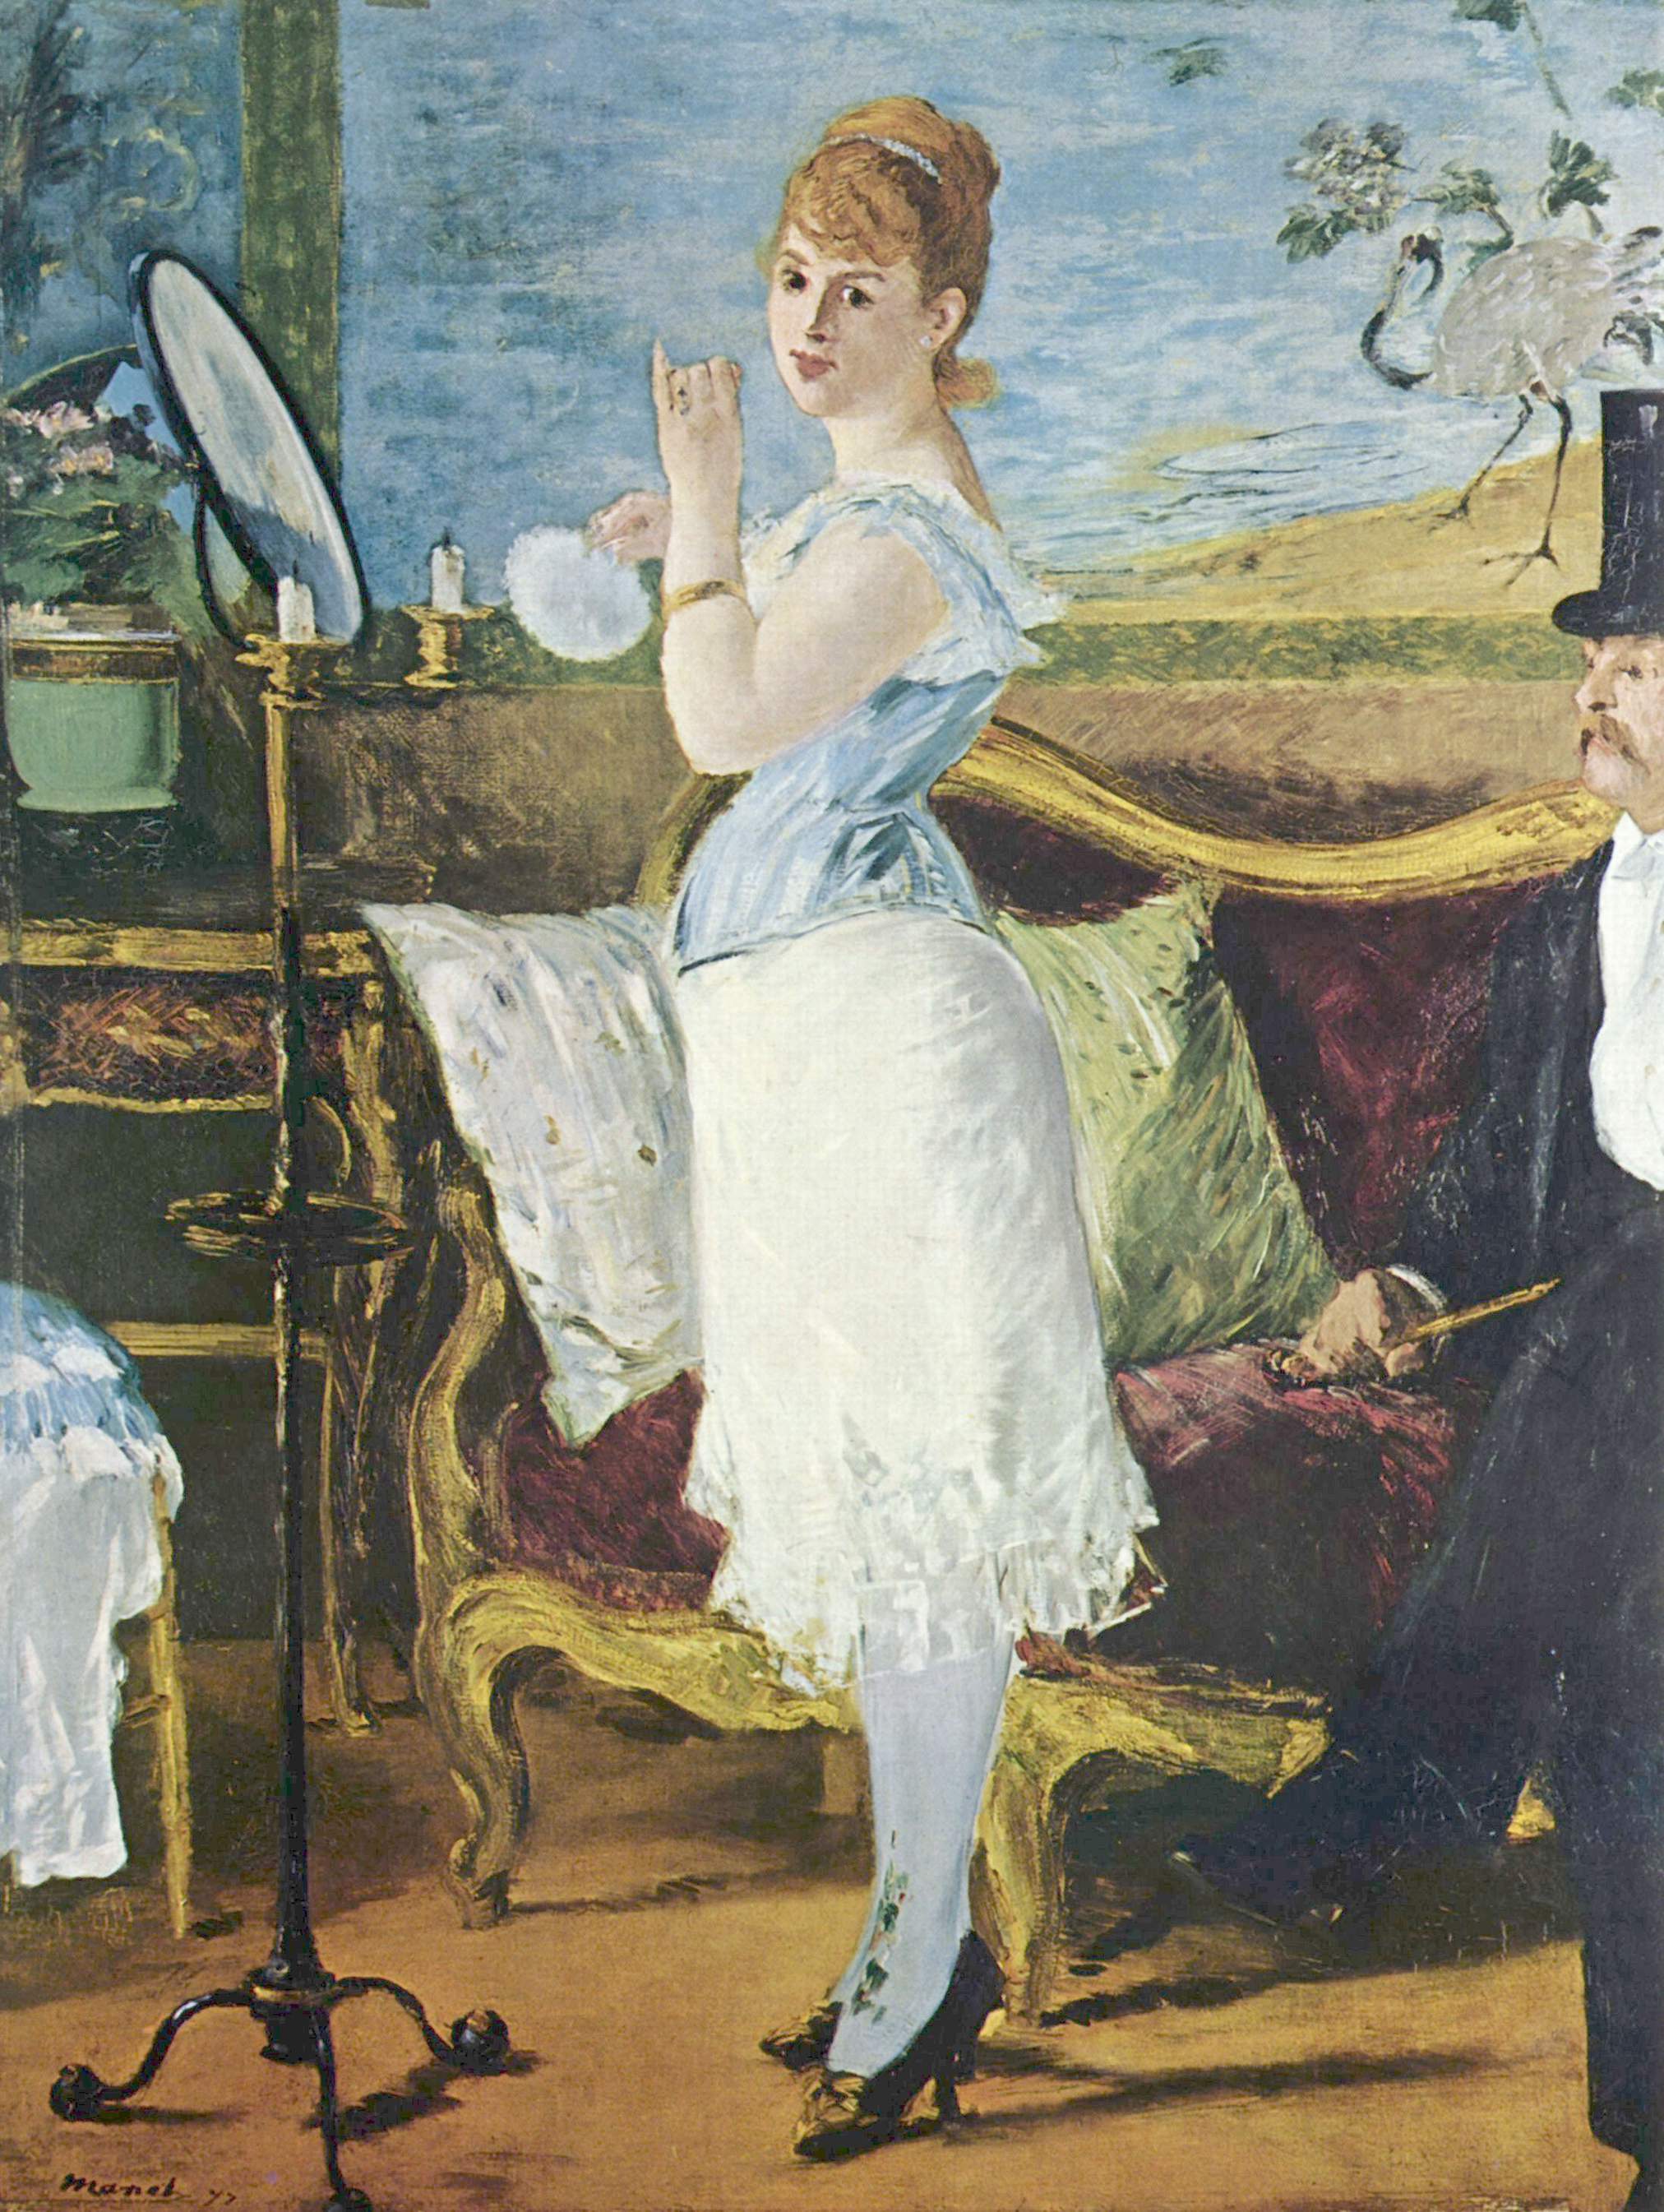 娜娜 by 爱德华 马奈 - 1877 - 264 cm × 115 cm 汉堡艺术馆